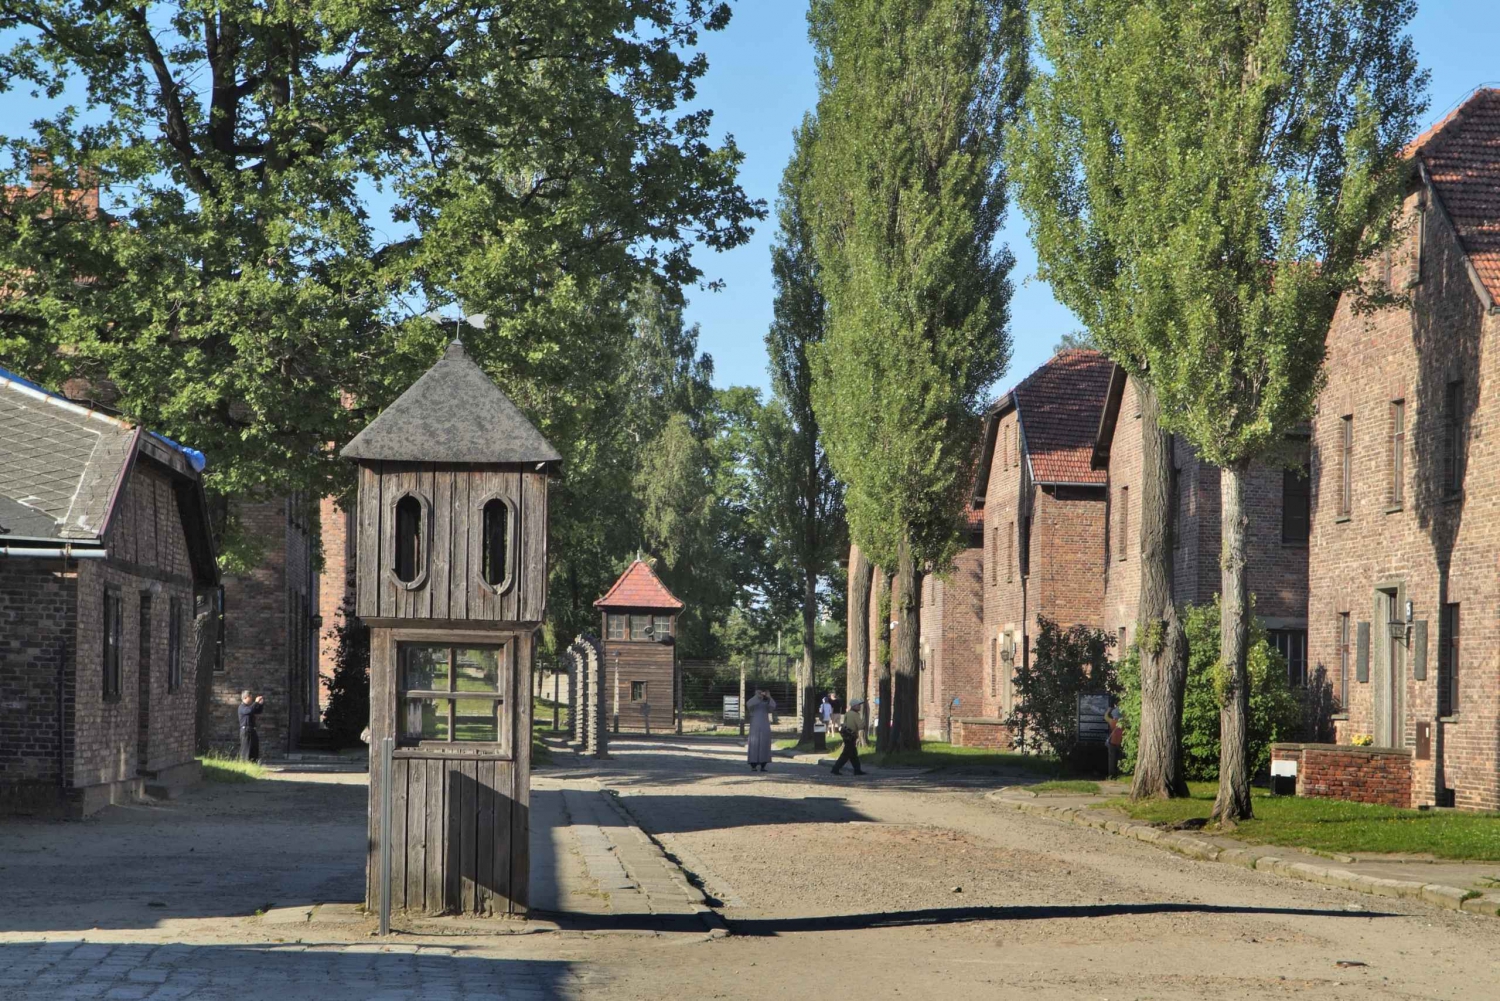 Krakow: Auschwitz-Birkenau and Wieliczka Salt Mine Day Trip